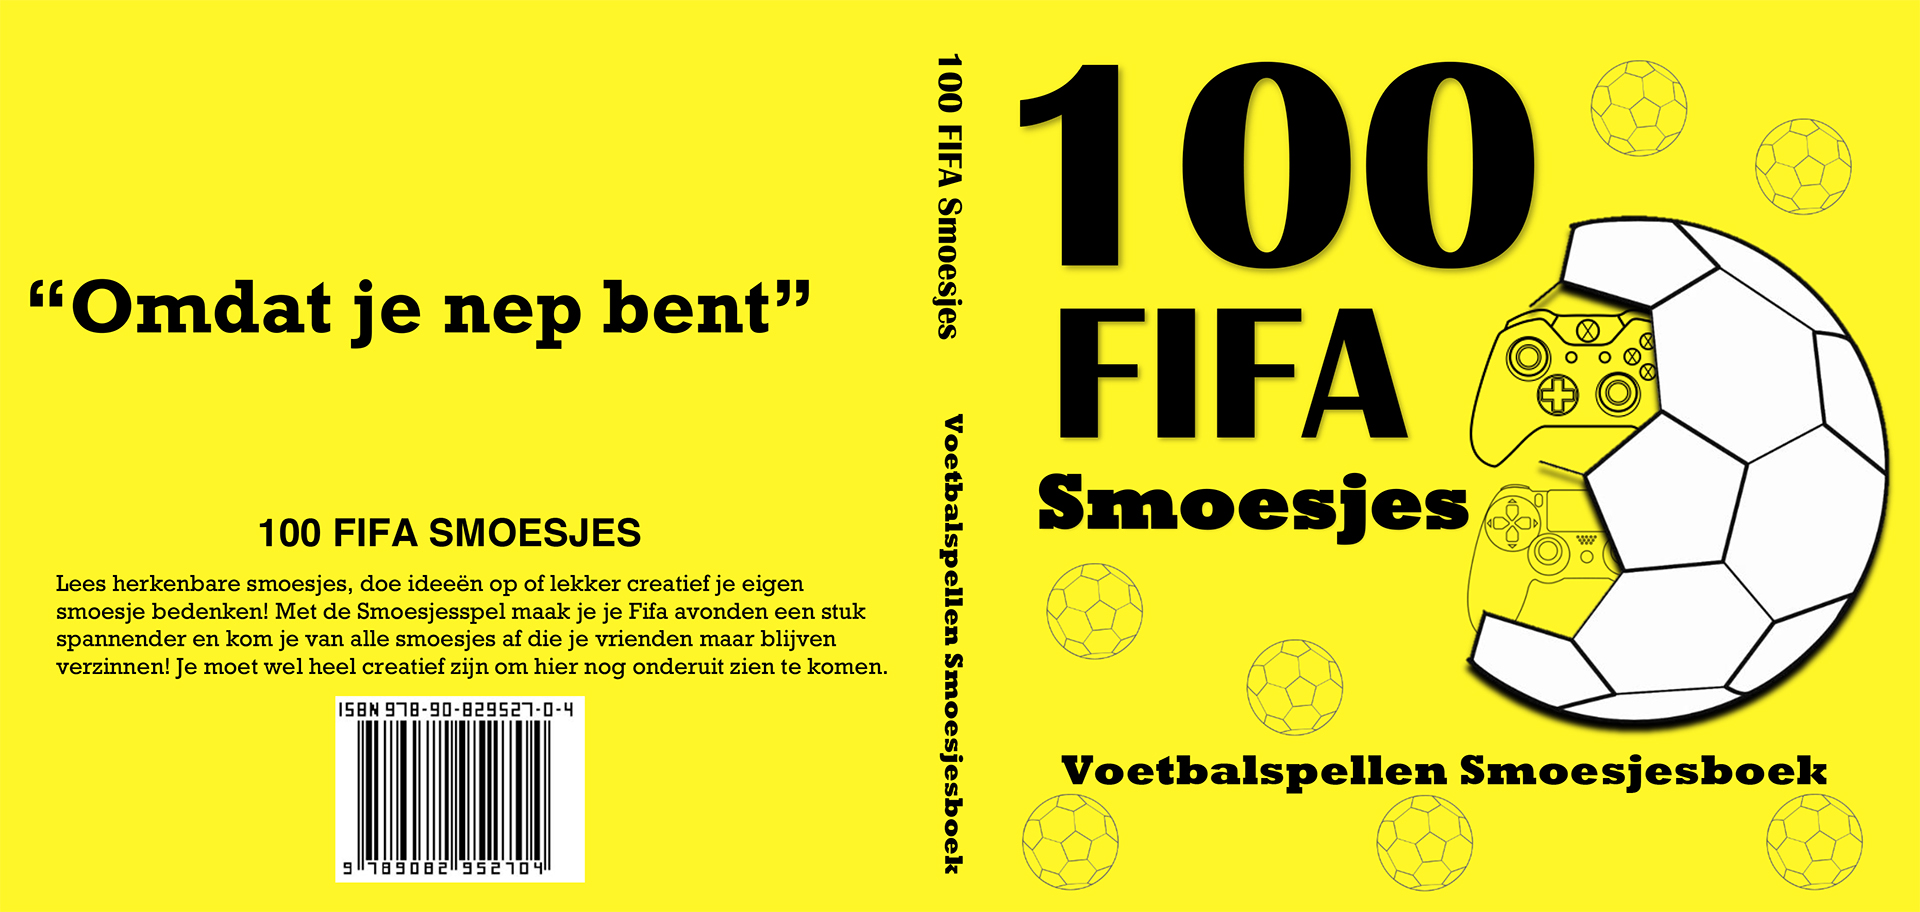 100 Fifa Smoesjes boek